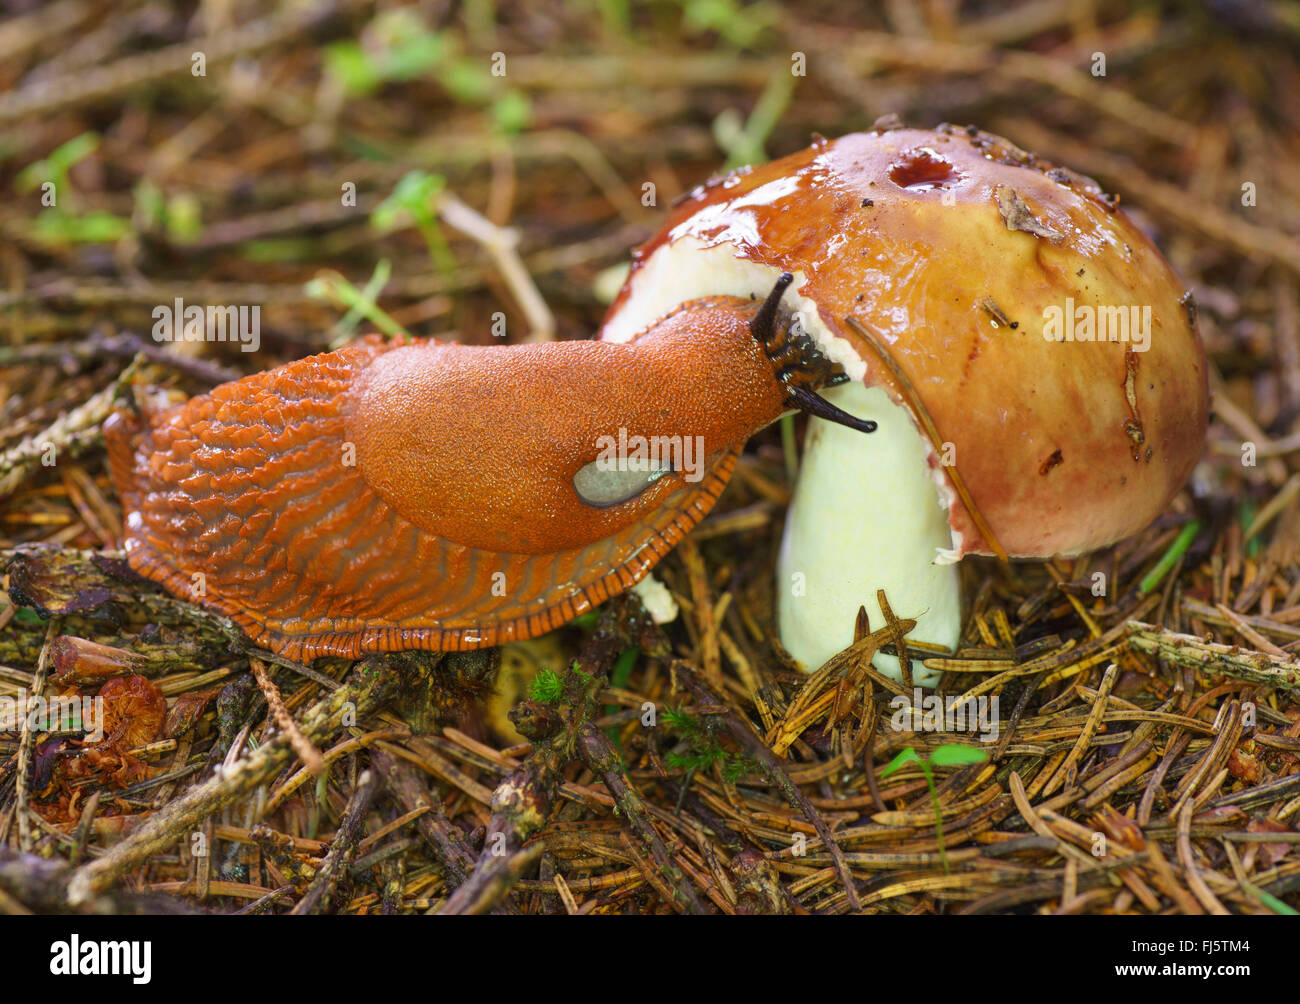 Large red slug, Greater red slug, Chocolate arion (Arion rufus, Arion ater, Arion ater ssp. rufus), feeding on a mushroom, Germany, Bavaria, Oberbayern, Upper Bavaria Stock Photo